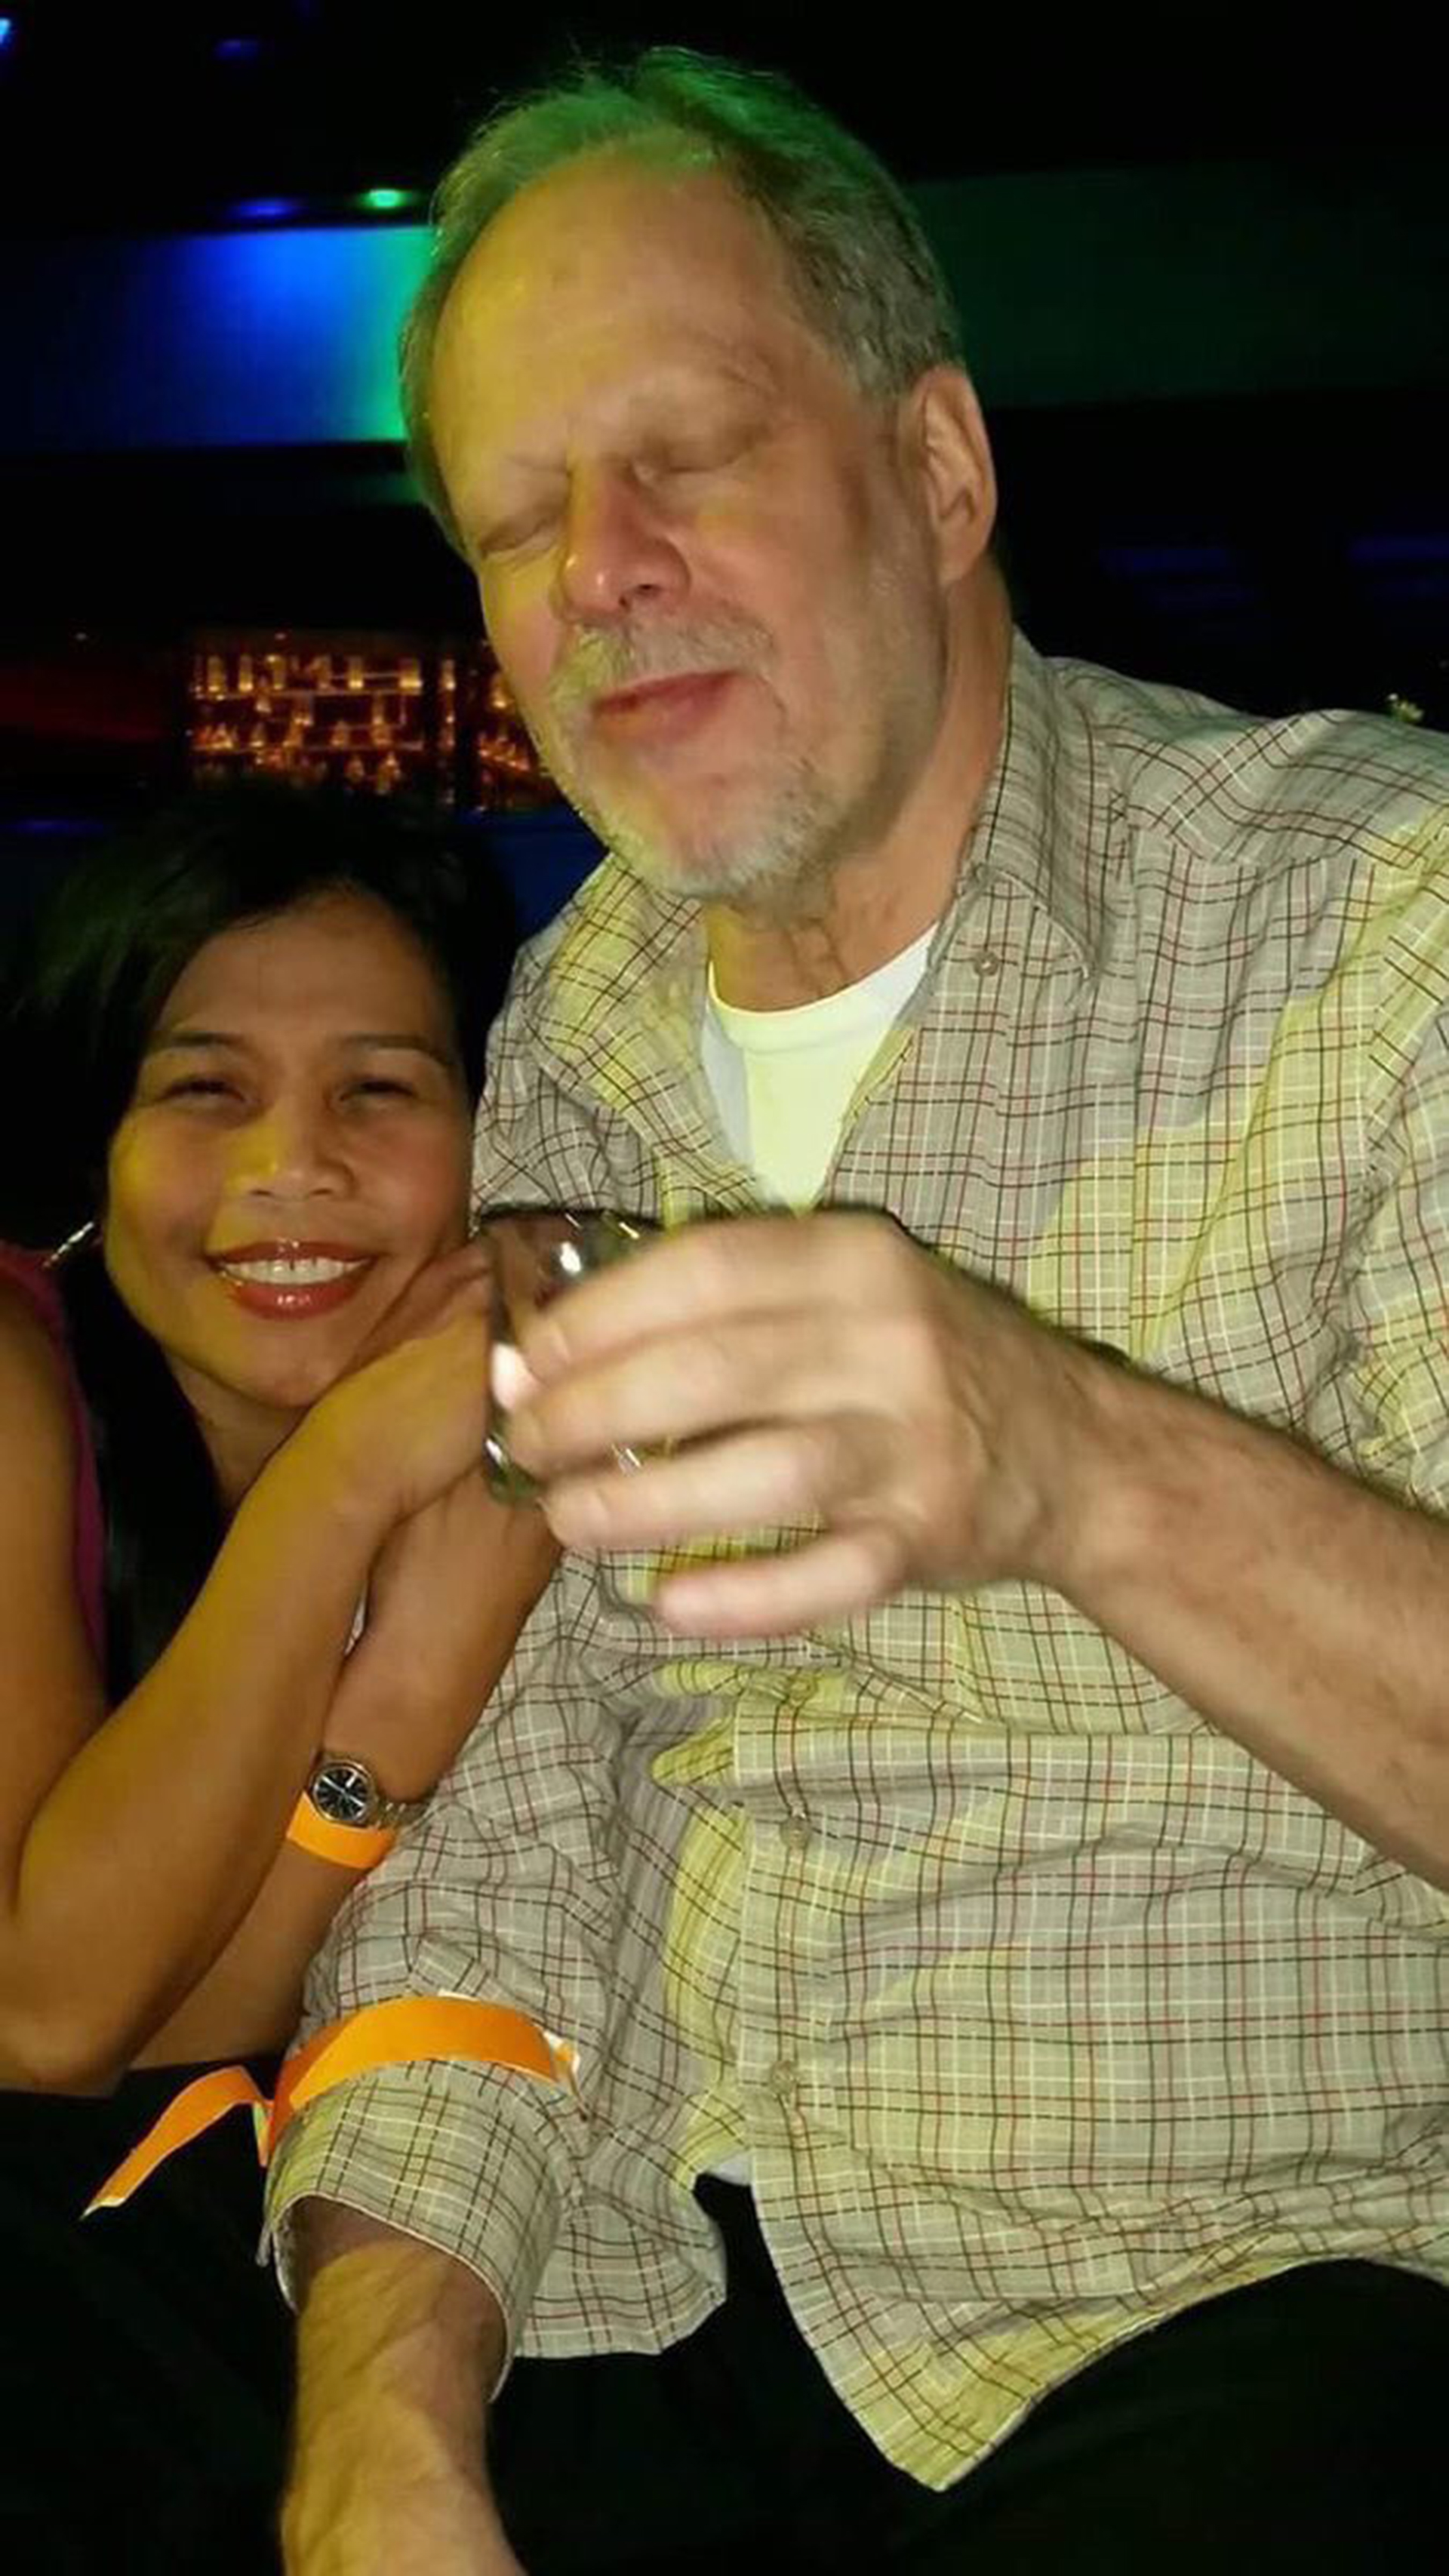 Stephen Paddock junto a Marilou Danley, su novia de origen filipina. Unas semanas antes, él le regaló un pasaje a filipinas para que ella fuera a visitar a su familia